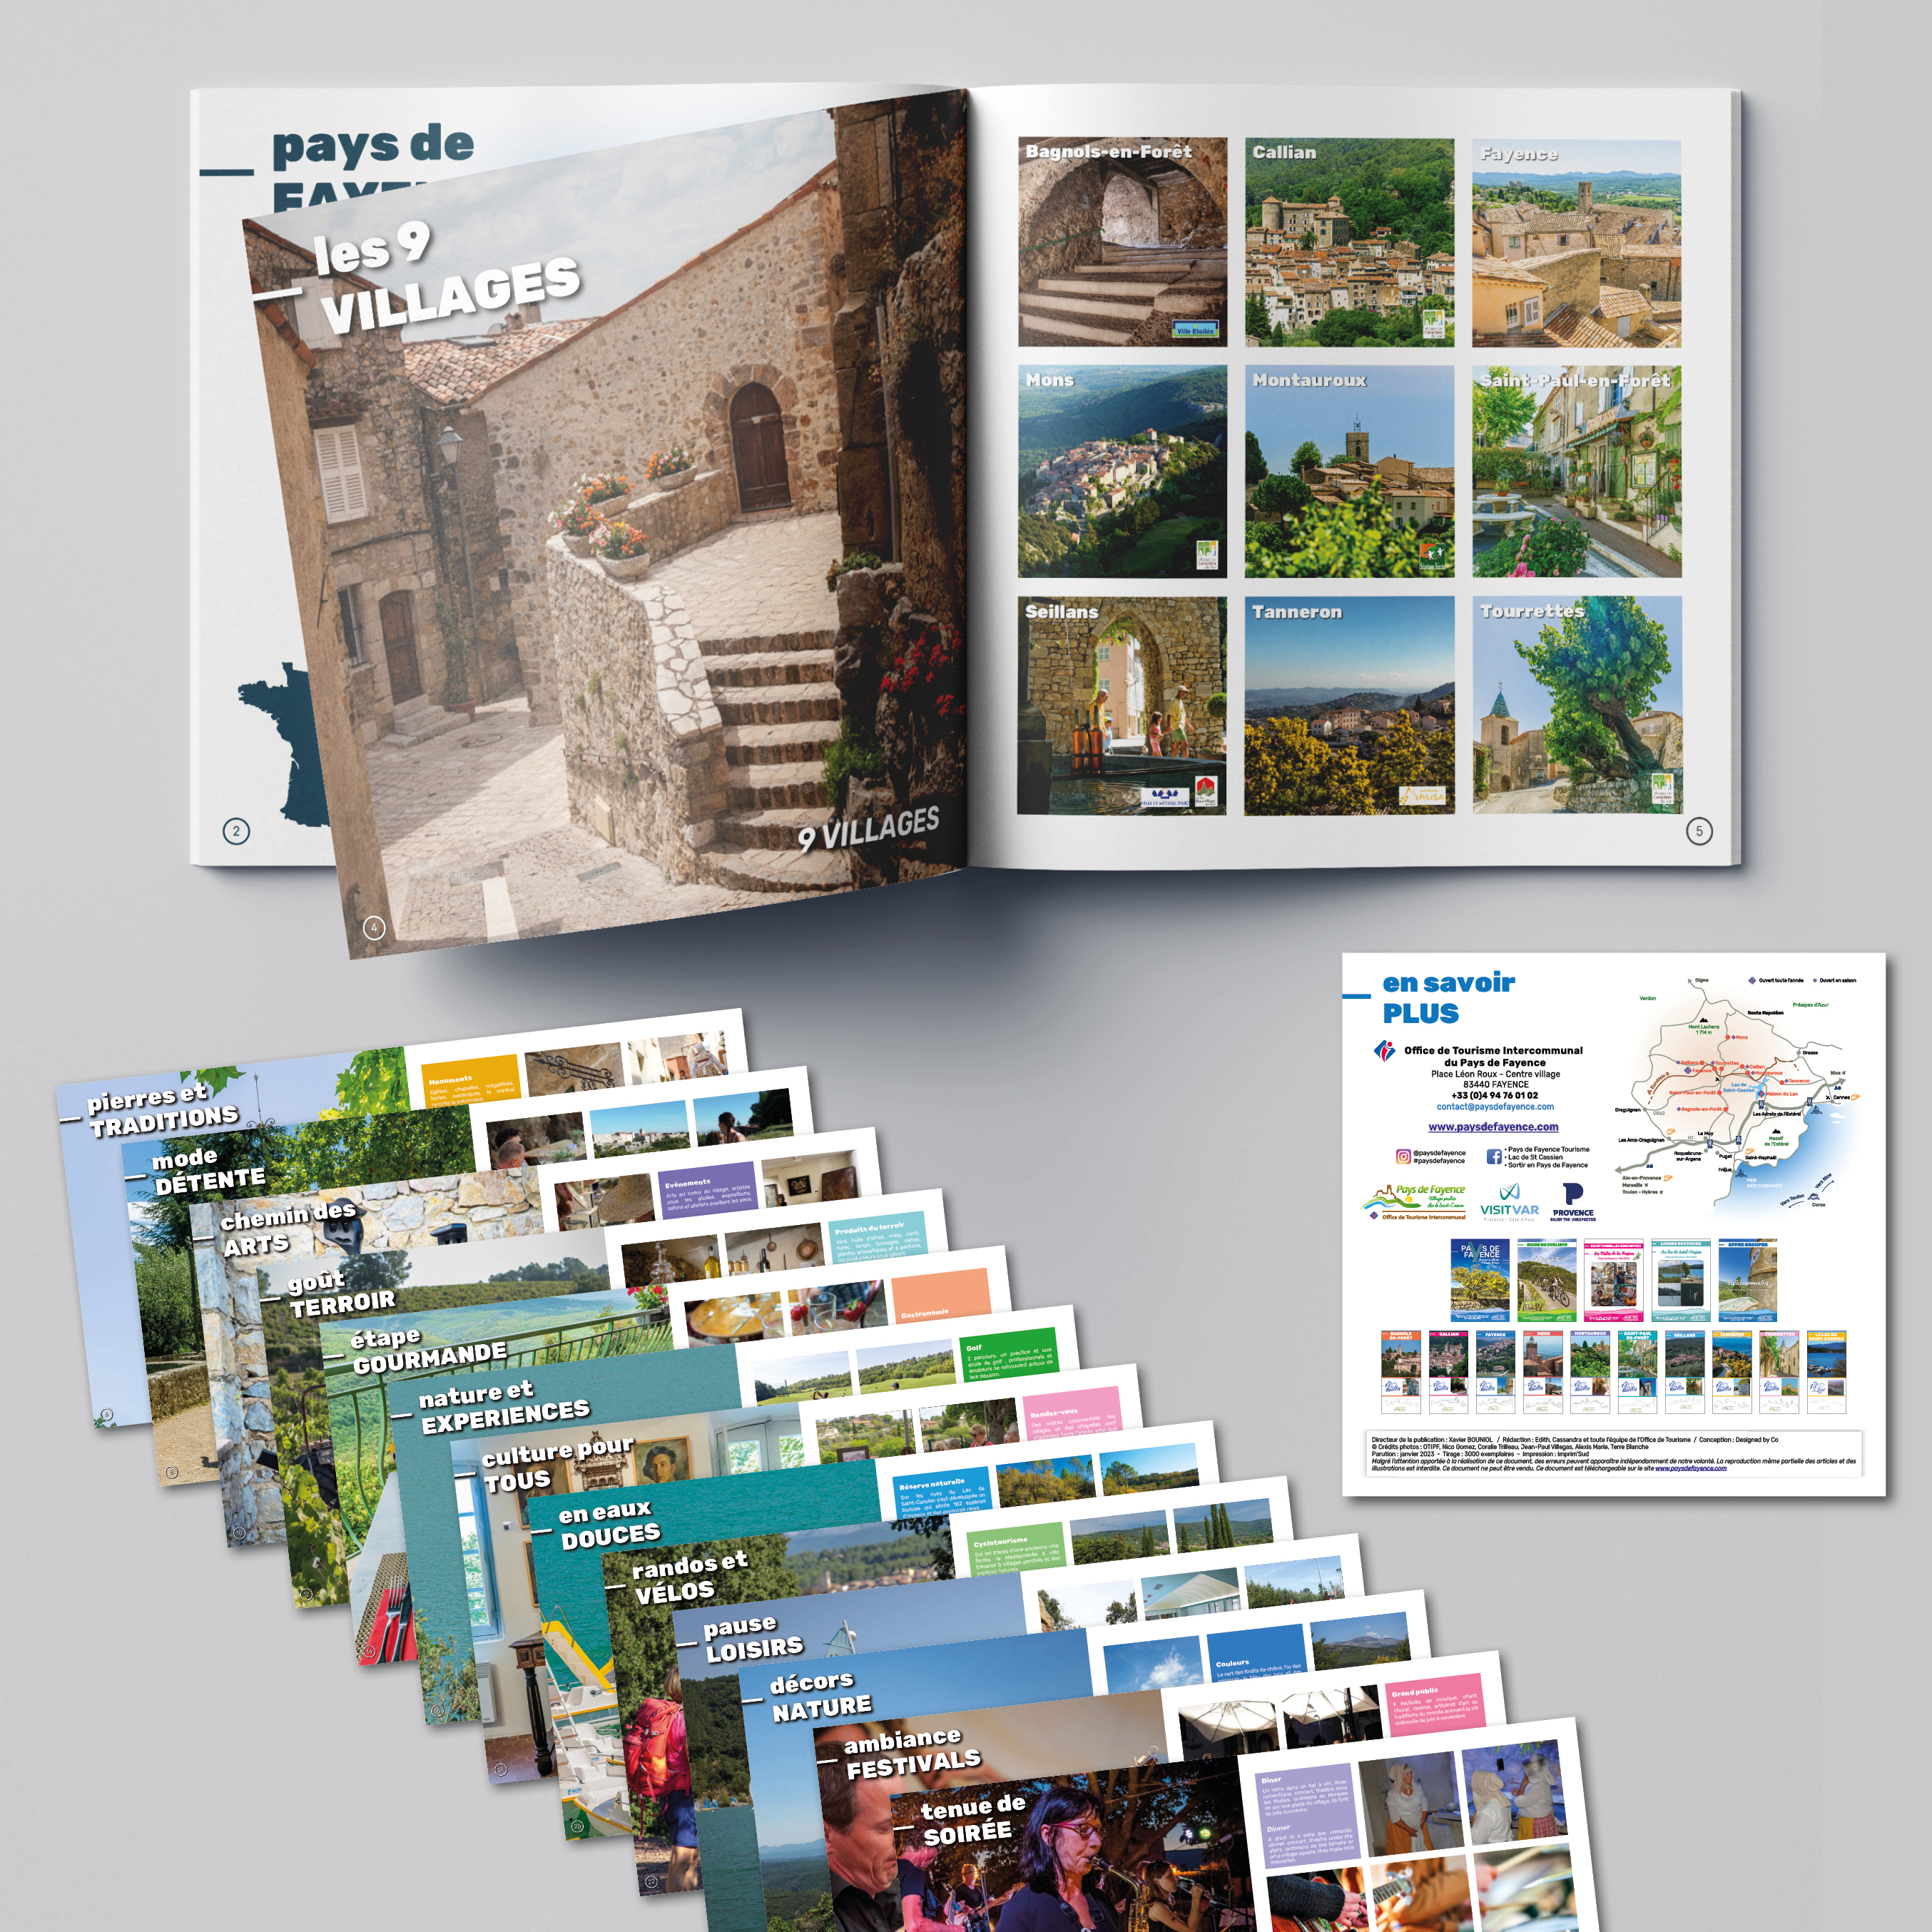 Guide d'Appel pour l'Office de Tourisme Intercommunal du Pays de Fayence